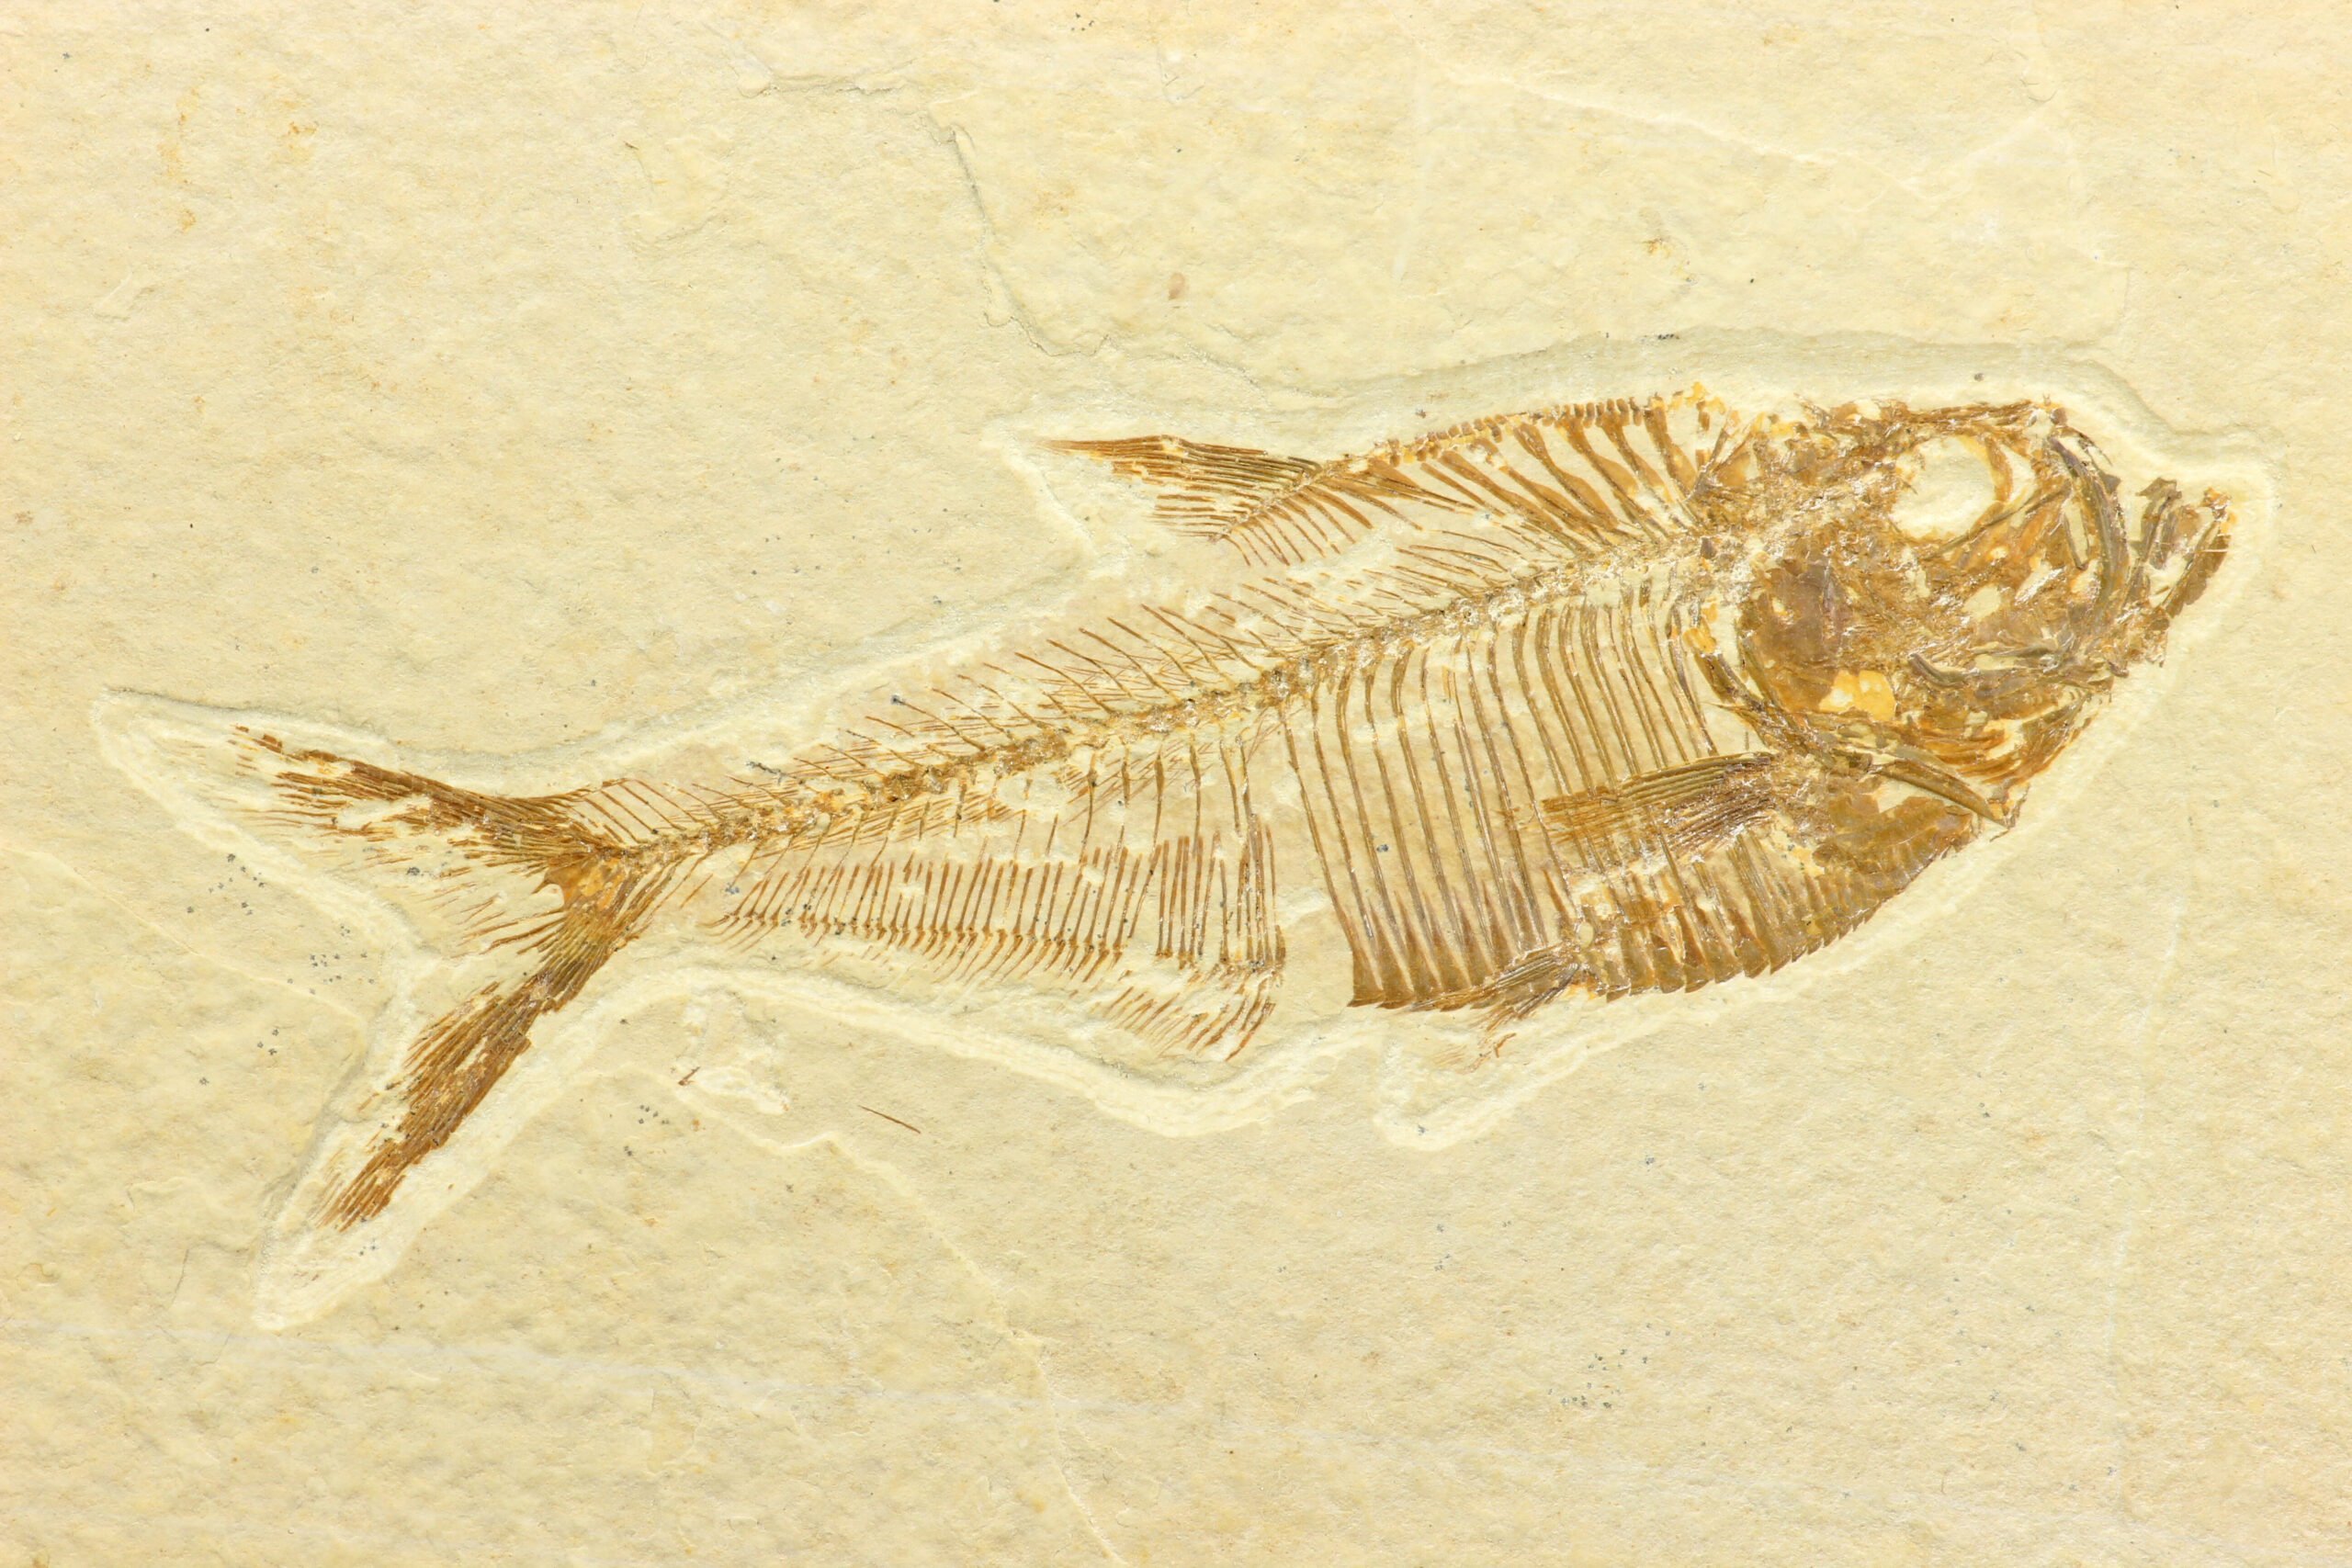 Un fossile découvert en Allemagne révèle le dernier repas funeste d’un poisson préhistorique